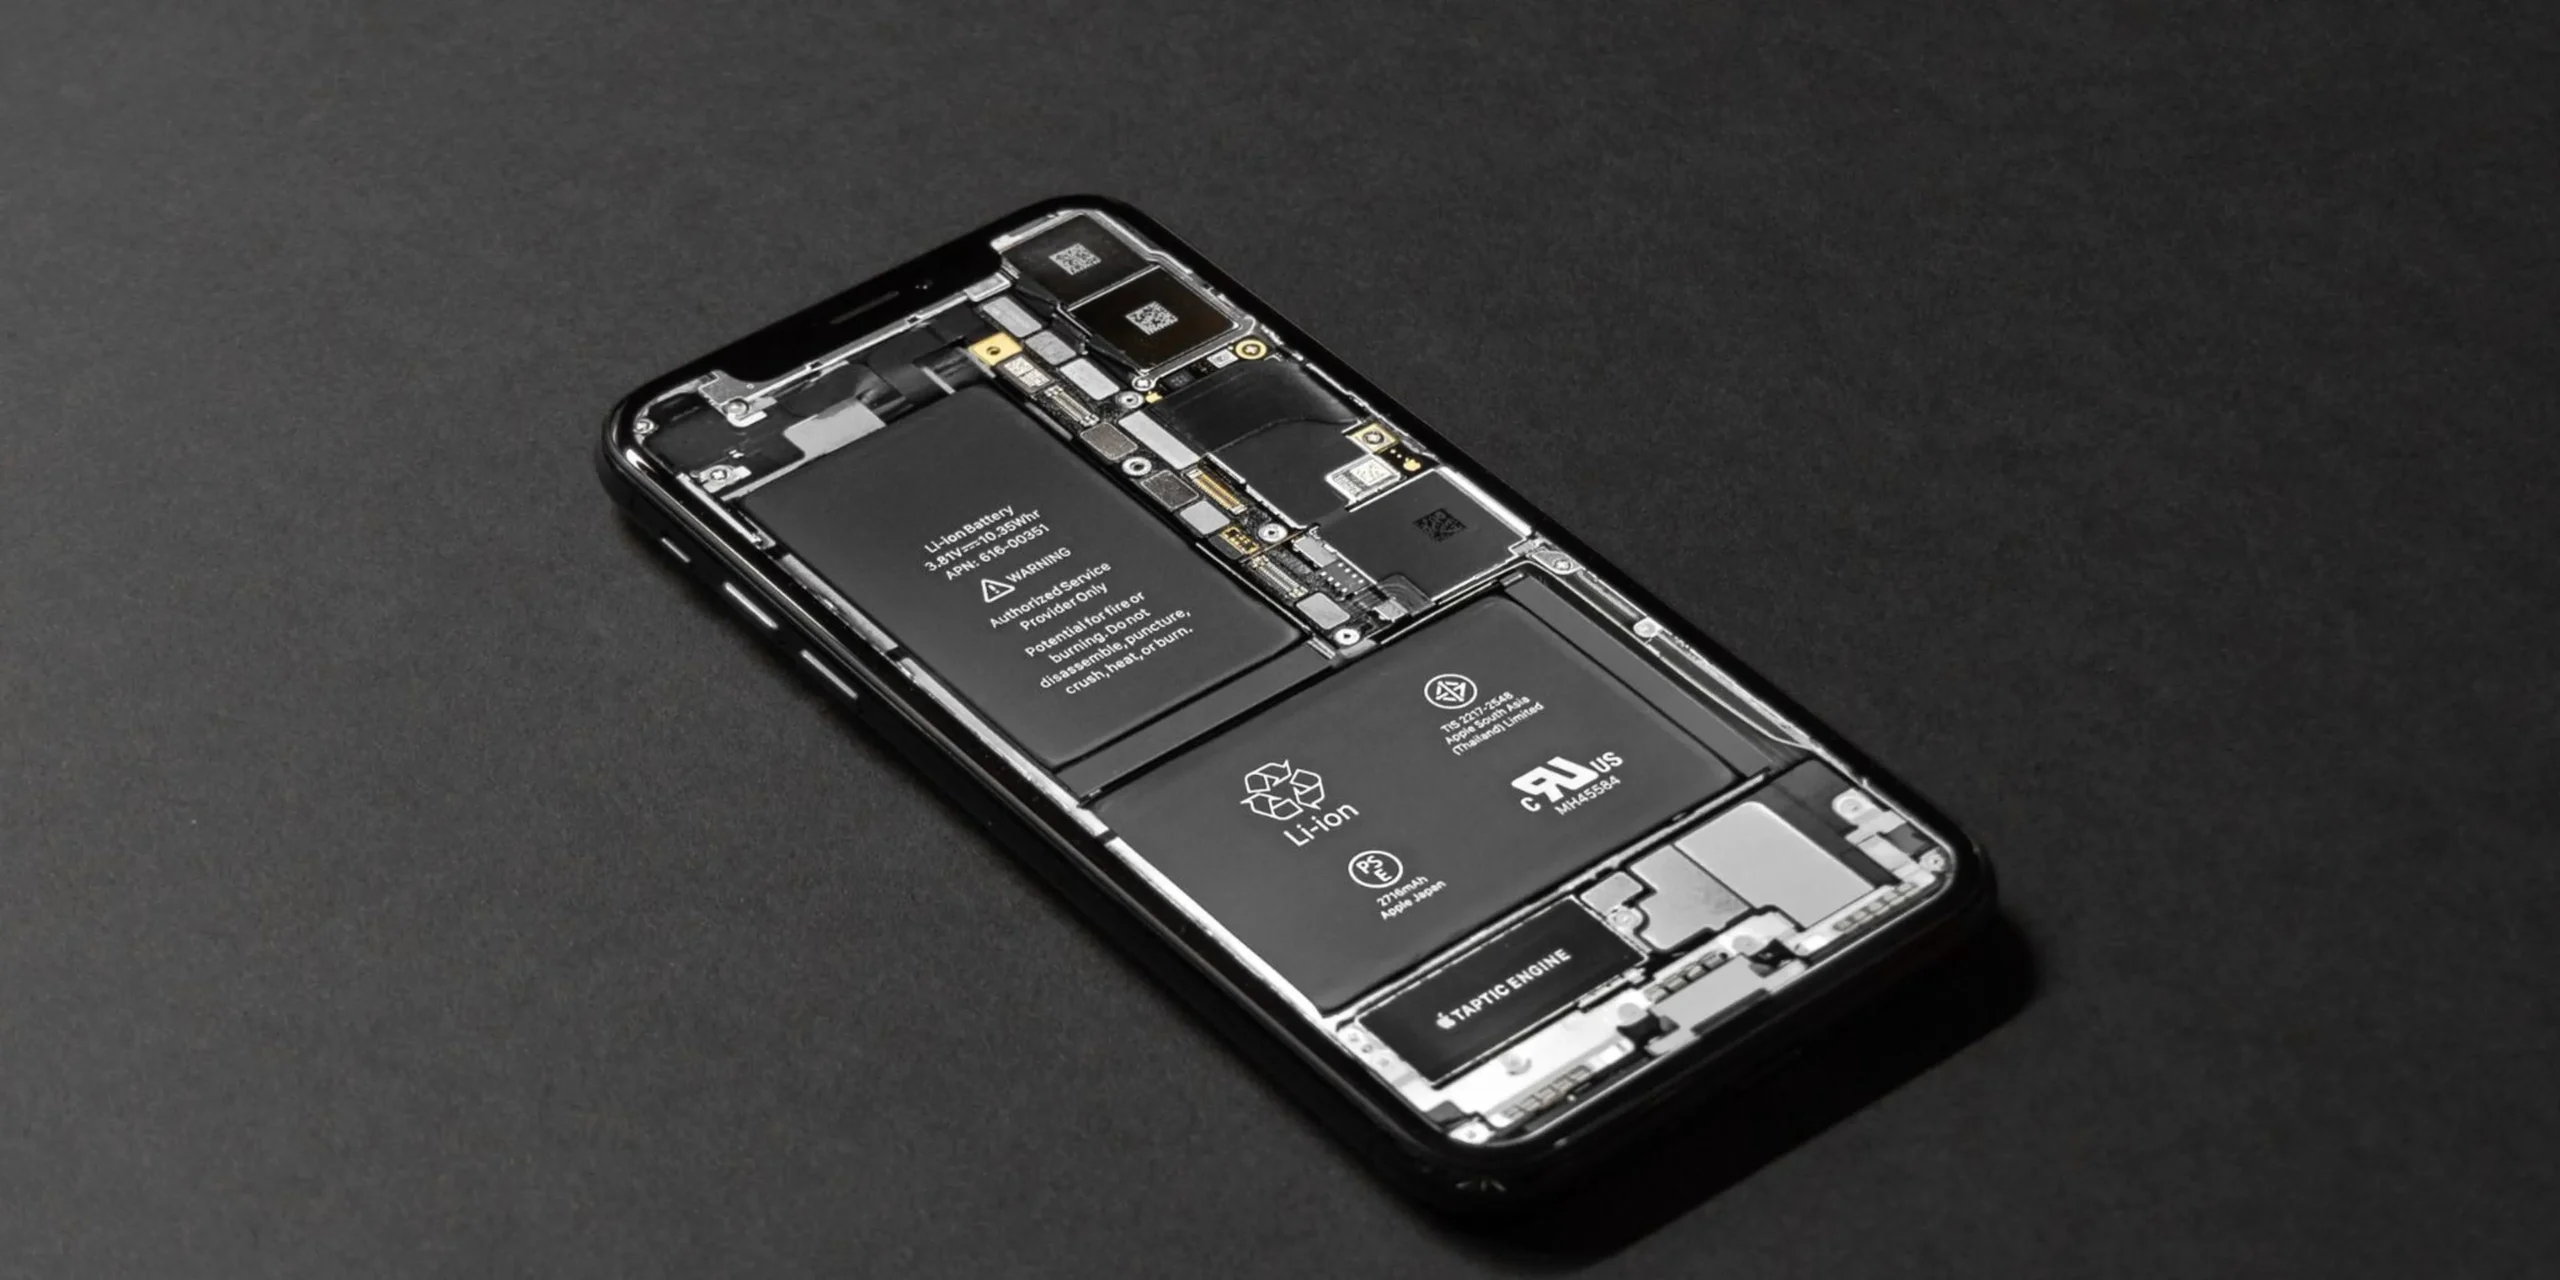 baterias no extraibles en celulares - Por qué las baterías ya no son extraibles